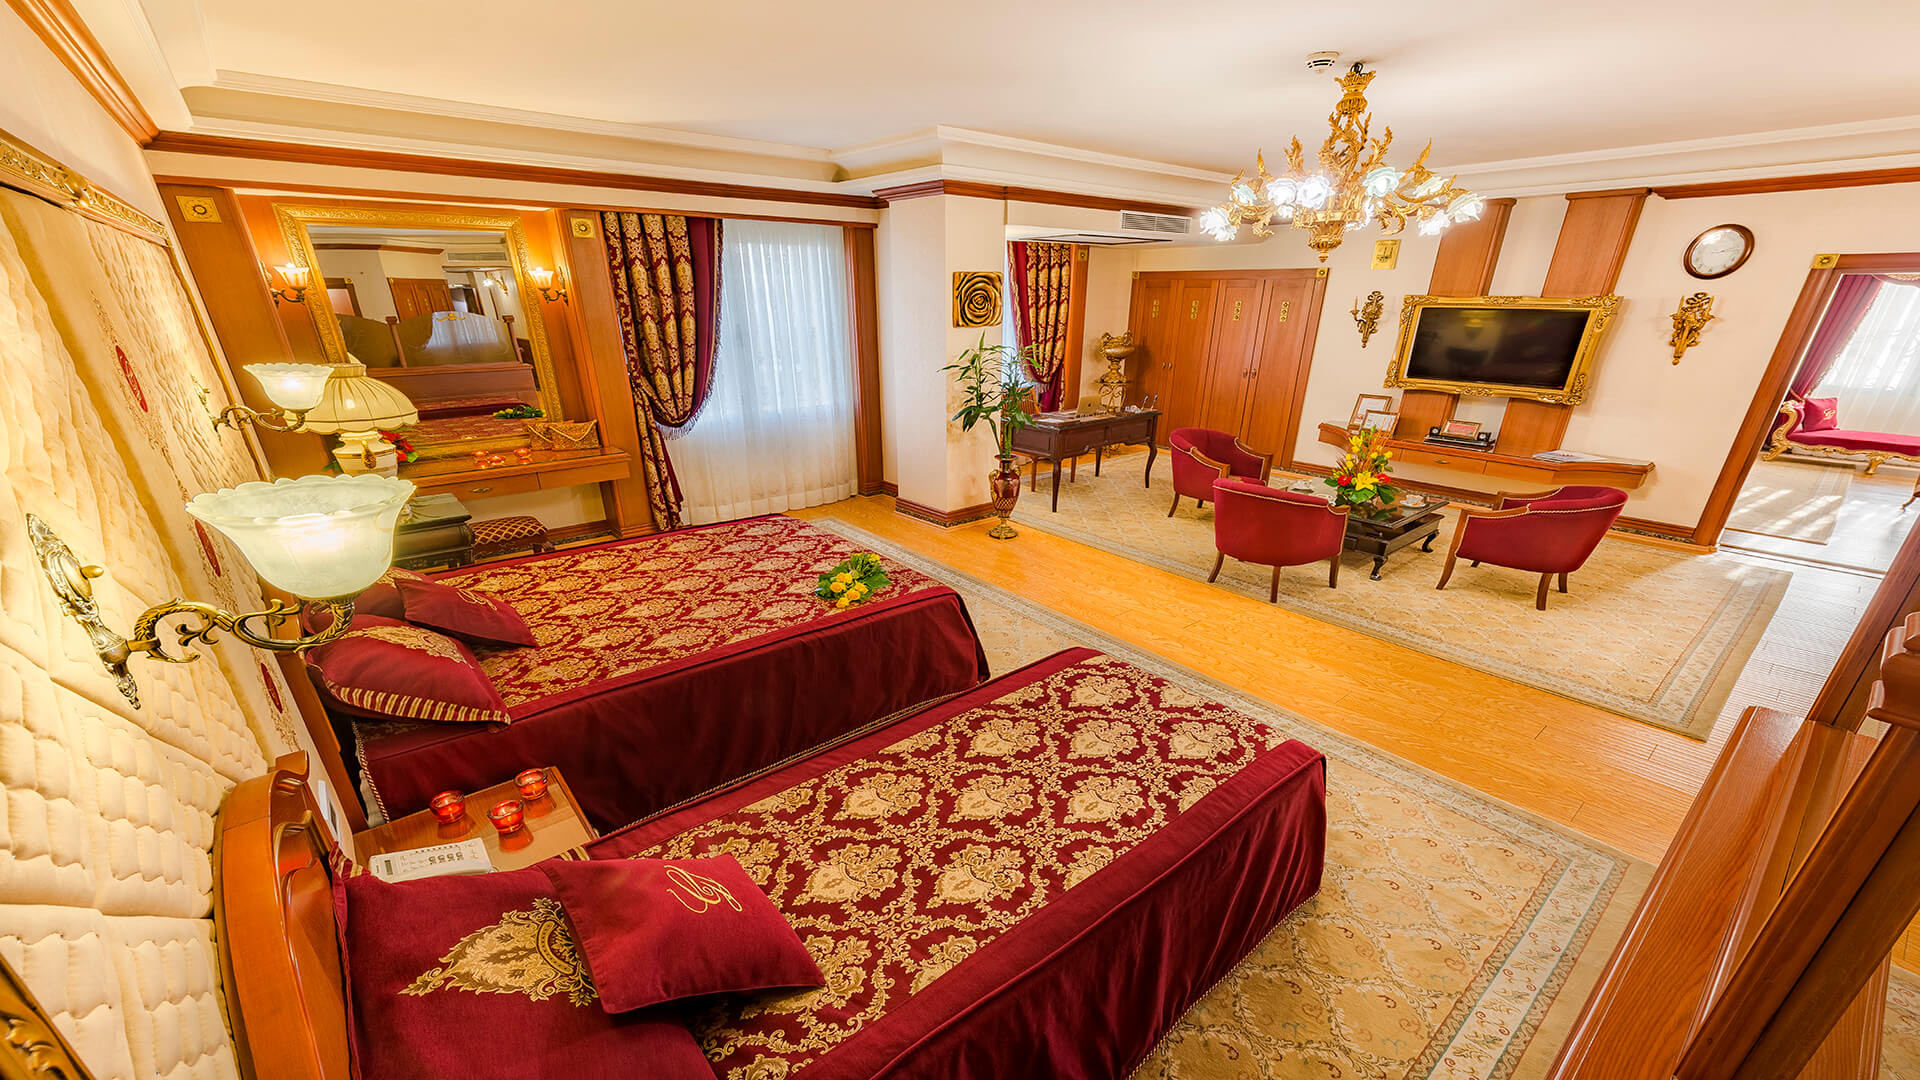 رزرو هتل قصر طلایی مشهد (آپارتمان رویال)